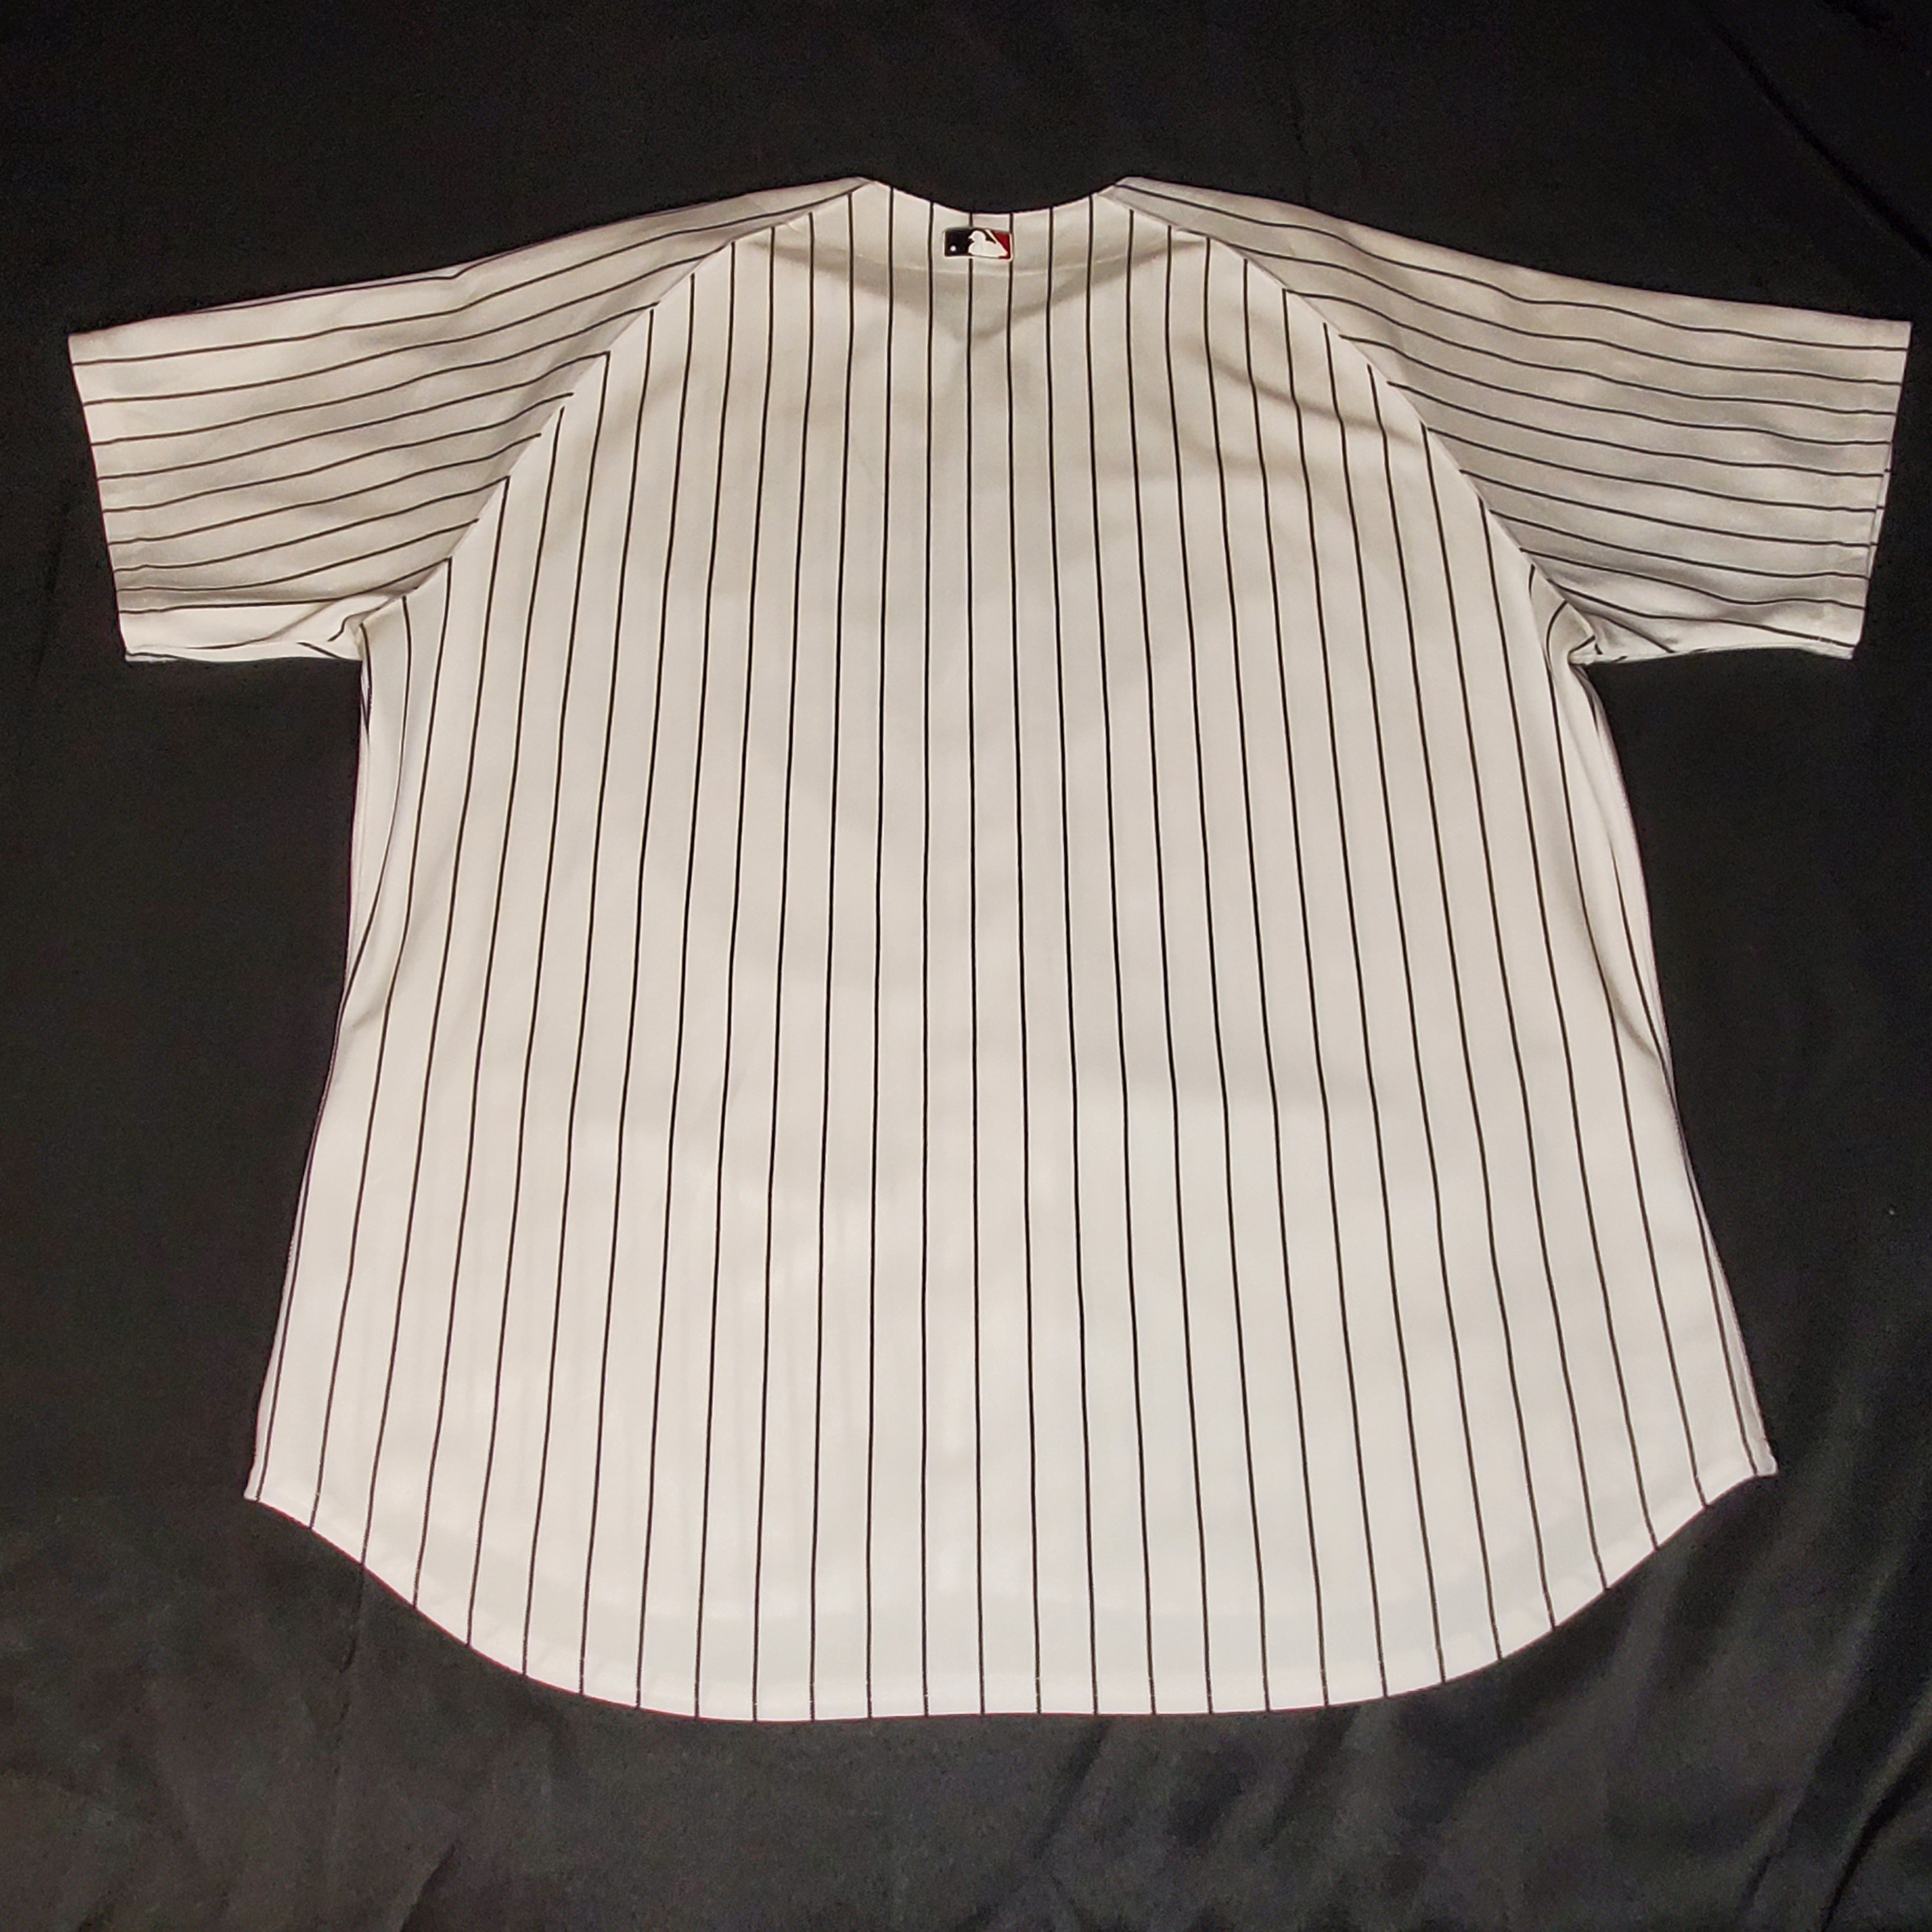 Baseball Jersey - White w/ Black Stripes *SALE FINAL*